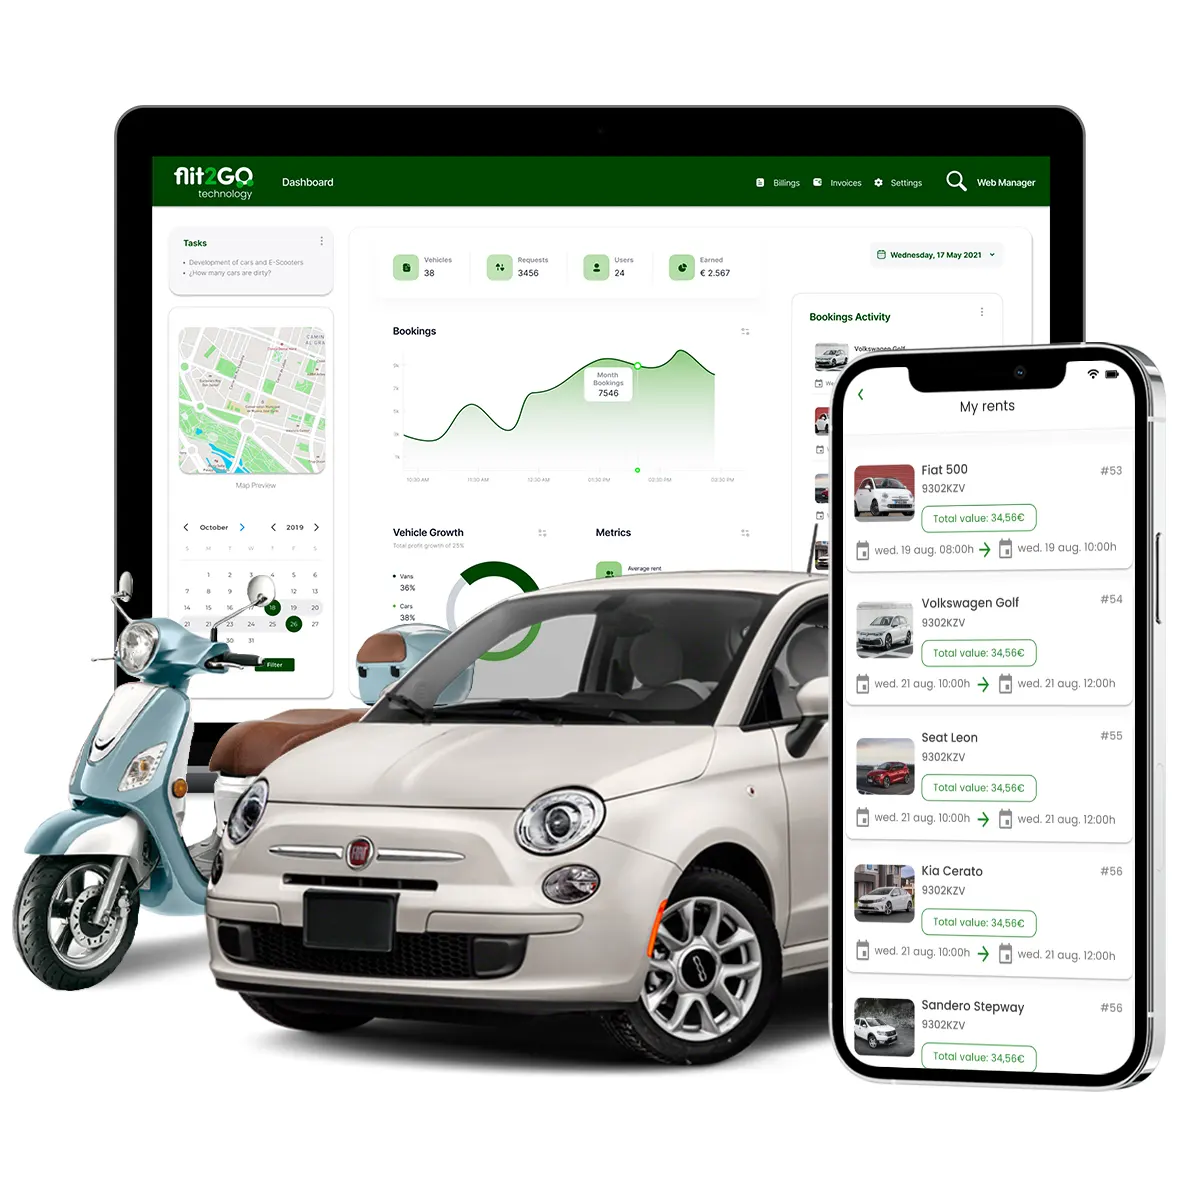 erp backoffice y smartphone con software de alquiler de vehículos como motocicleta o coche